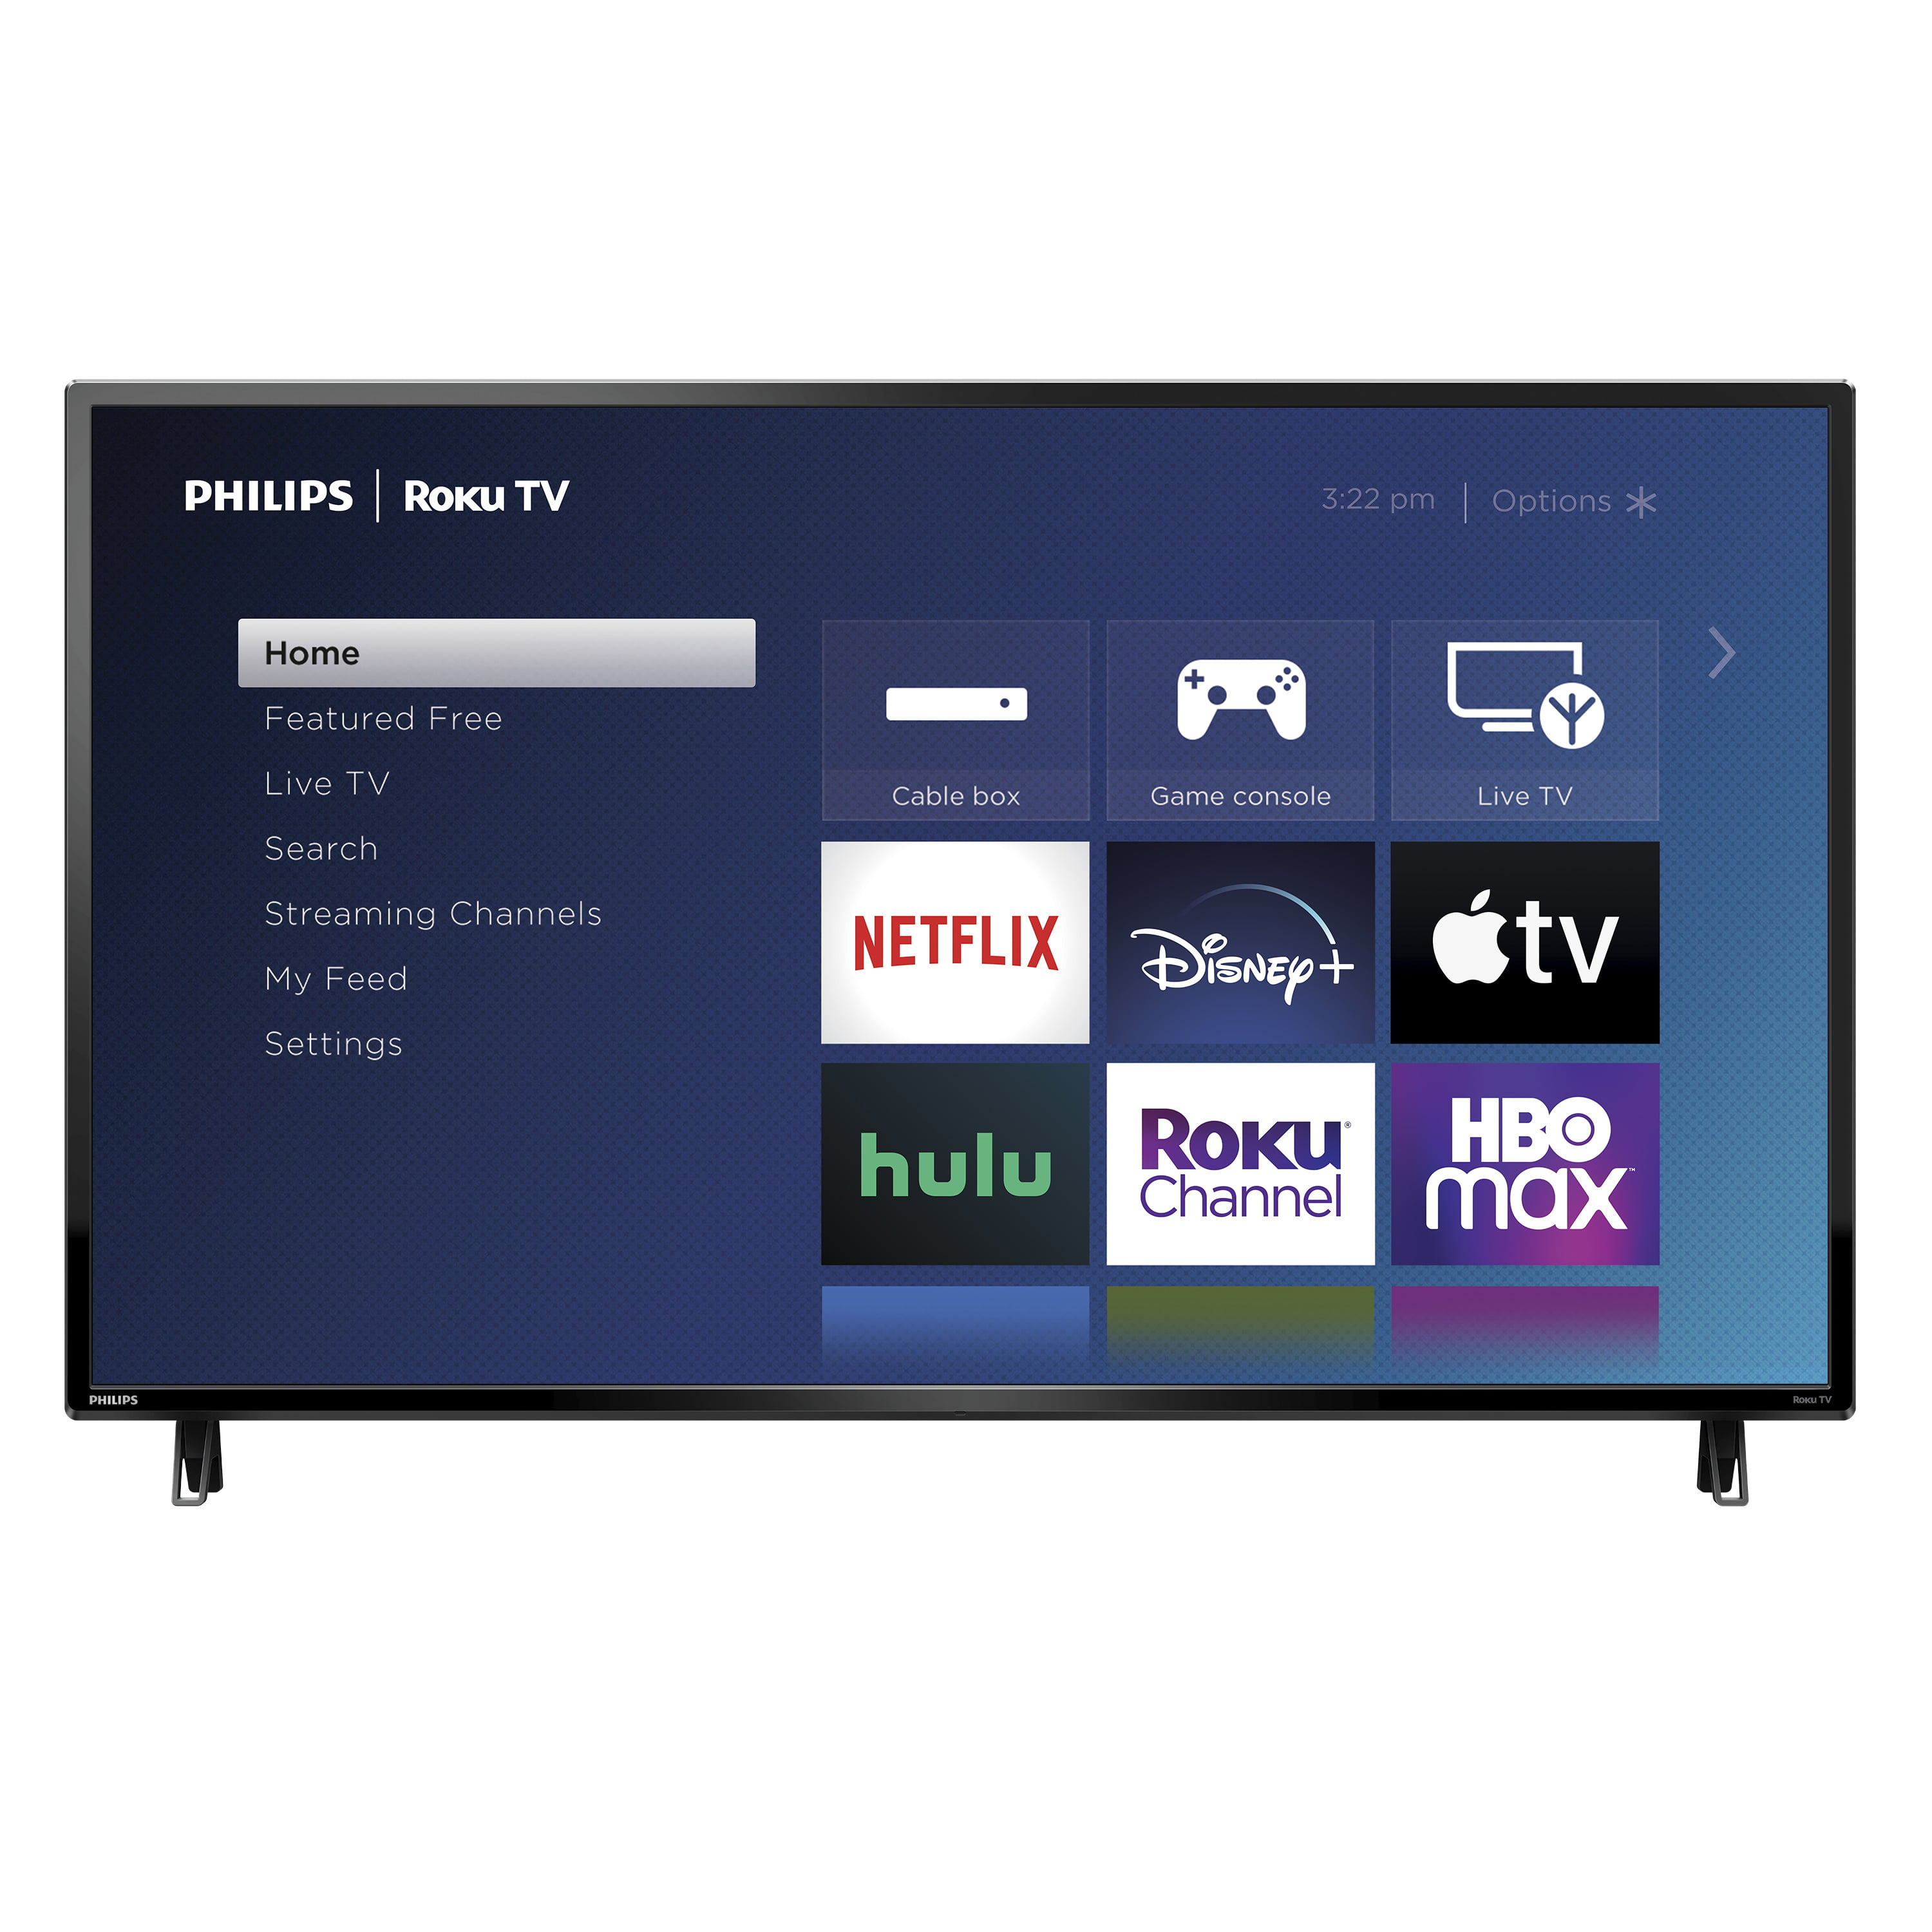 Philips 50" Class 4K Ultra HD (2160p) Roku Smart LED TV (50PFL4756/F7 W) - Walmart.com $218.00